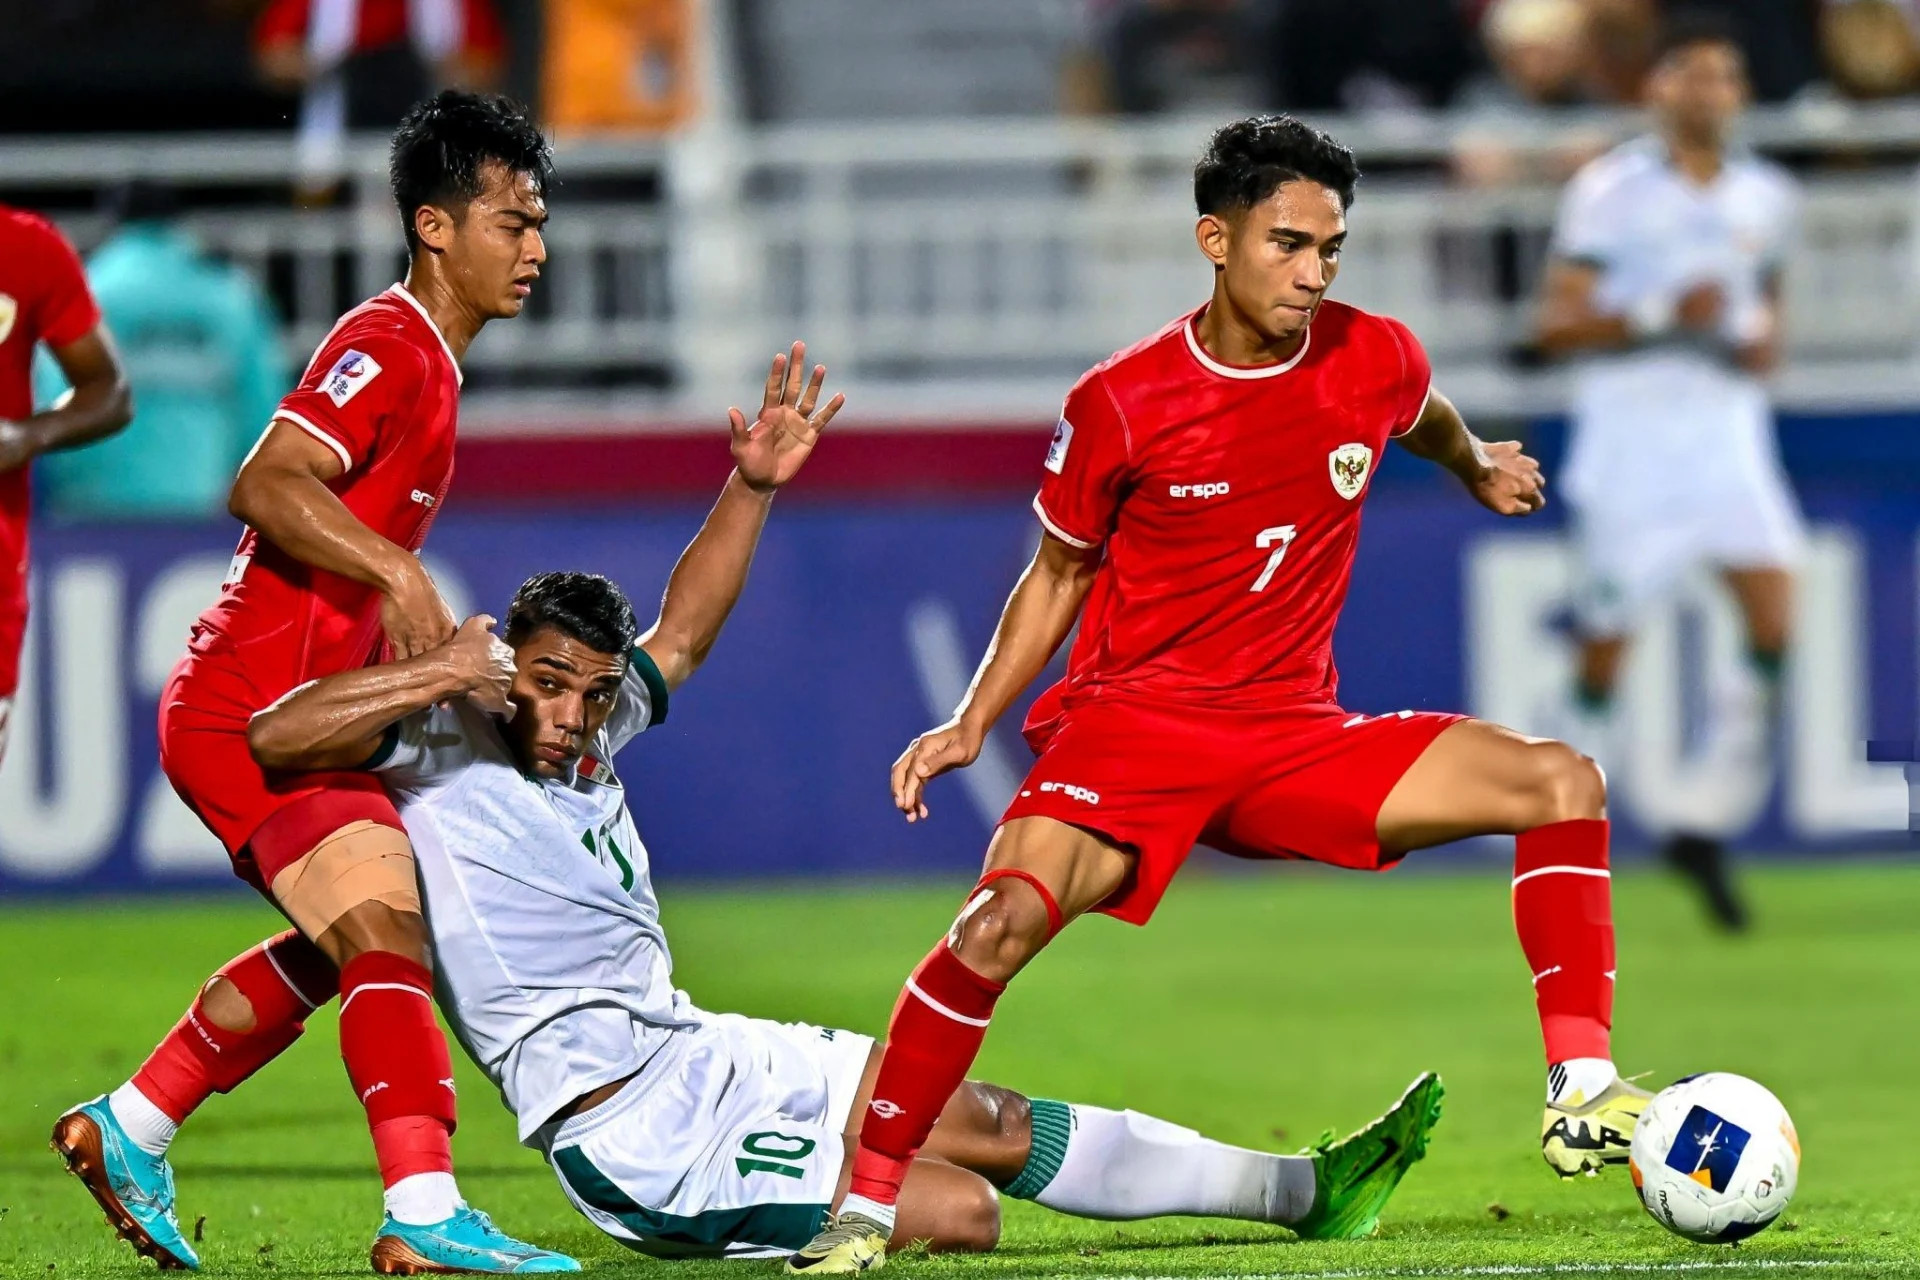  Trực tiếp bóng đá Indonesia 0-2 Iraq: Thủ môn báo hại chủ nhà